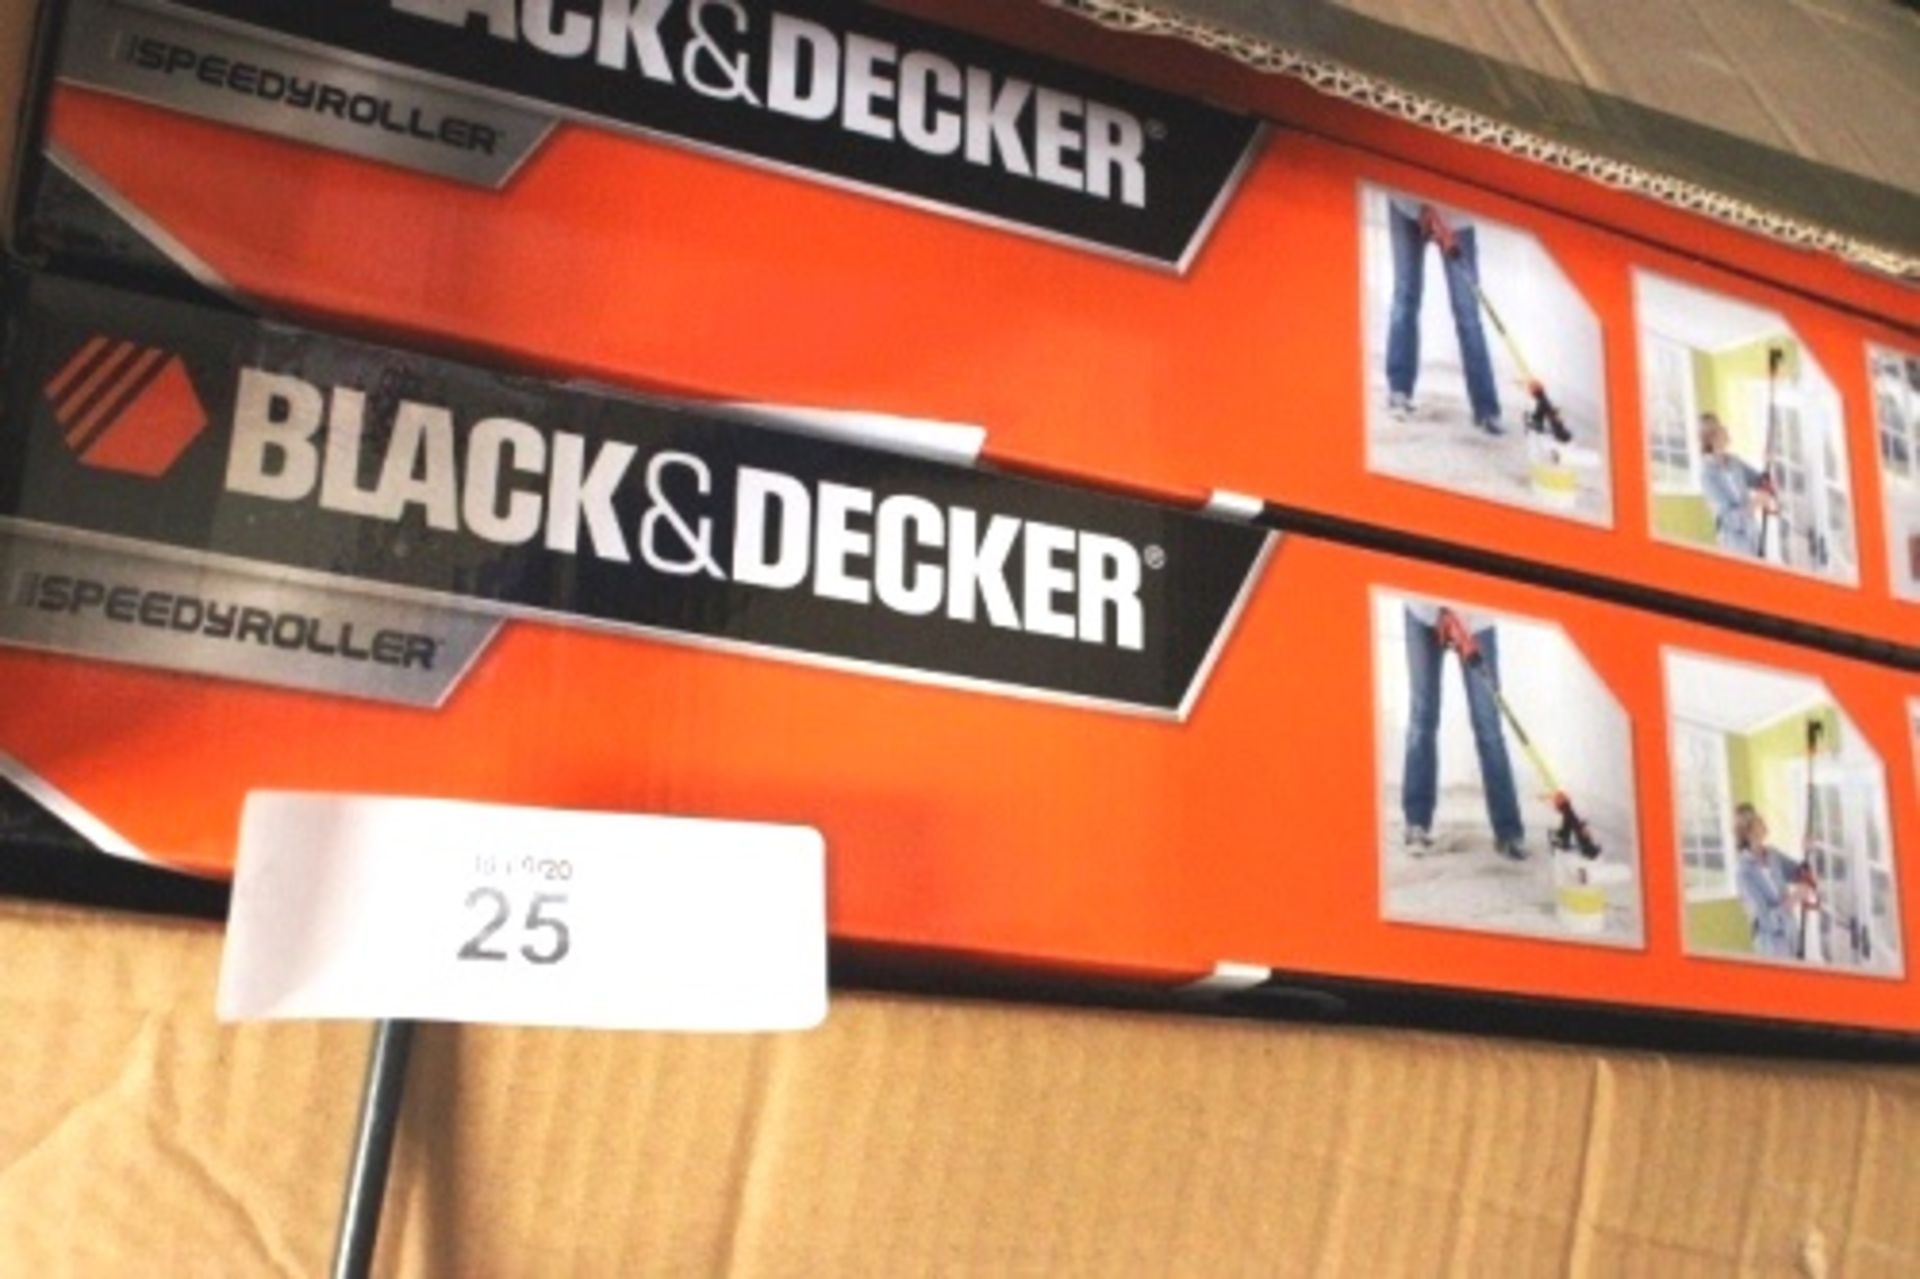 3 x Black & Decker speedy rollers, model BODPR400 - New (GS26)